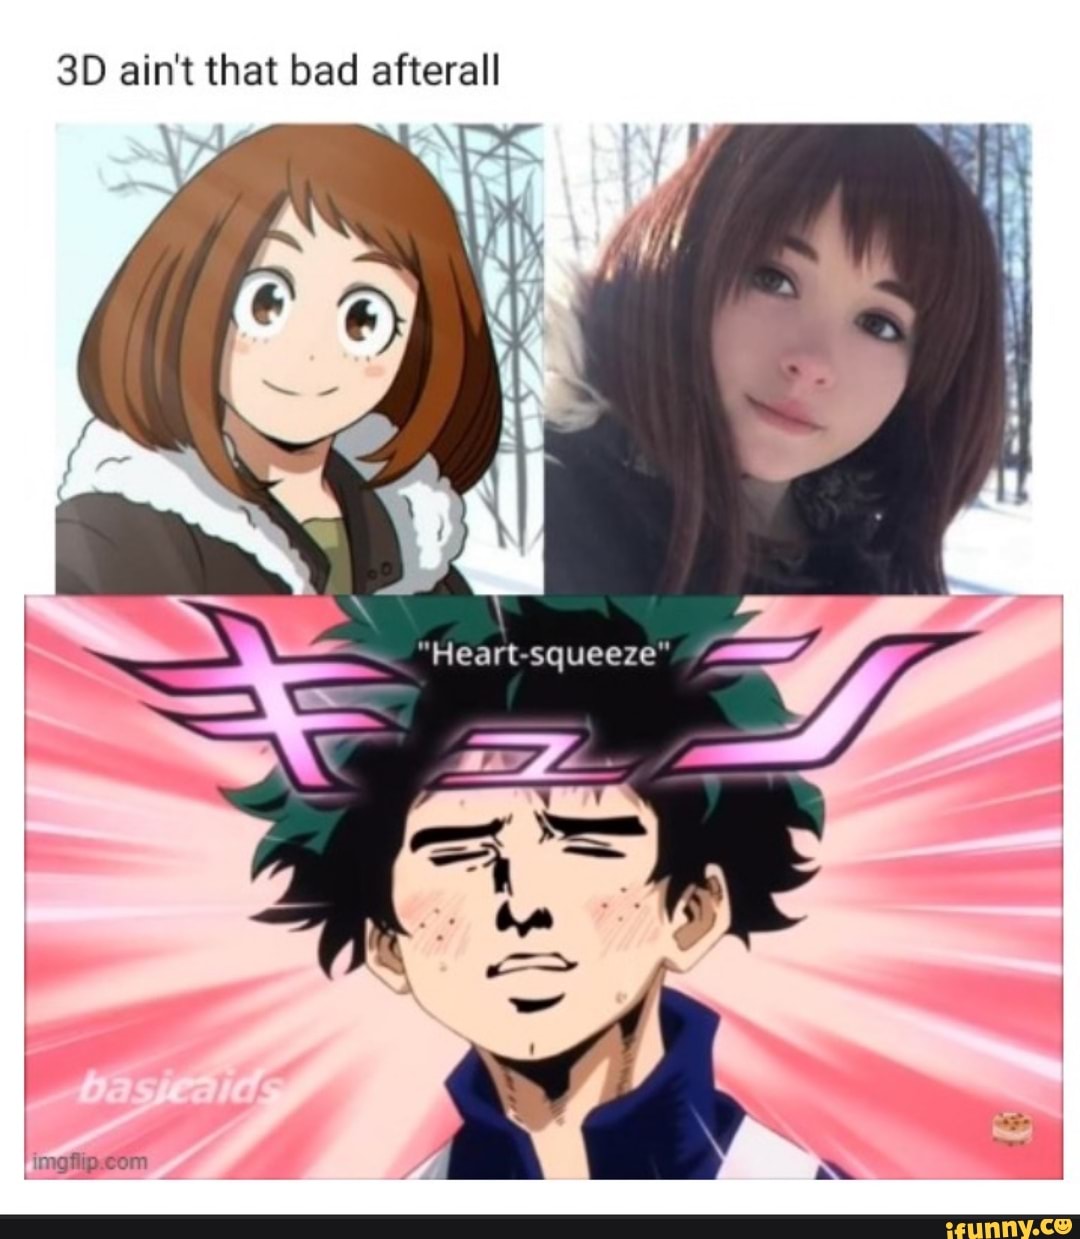 Heart Eyes Anime Meme 3D Face